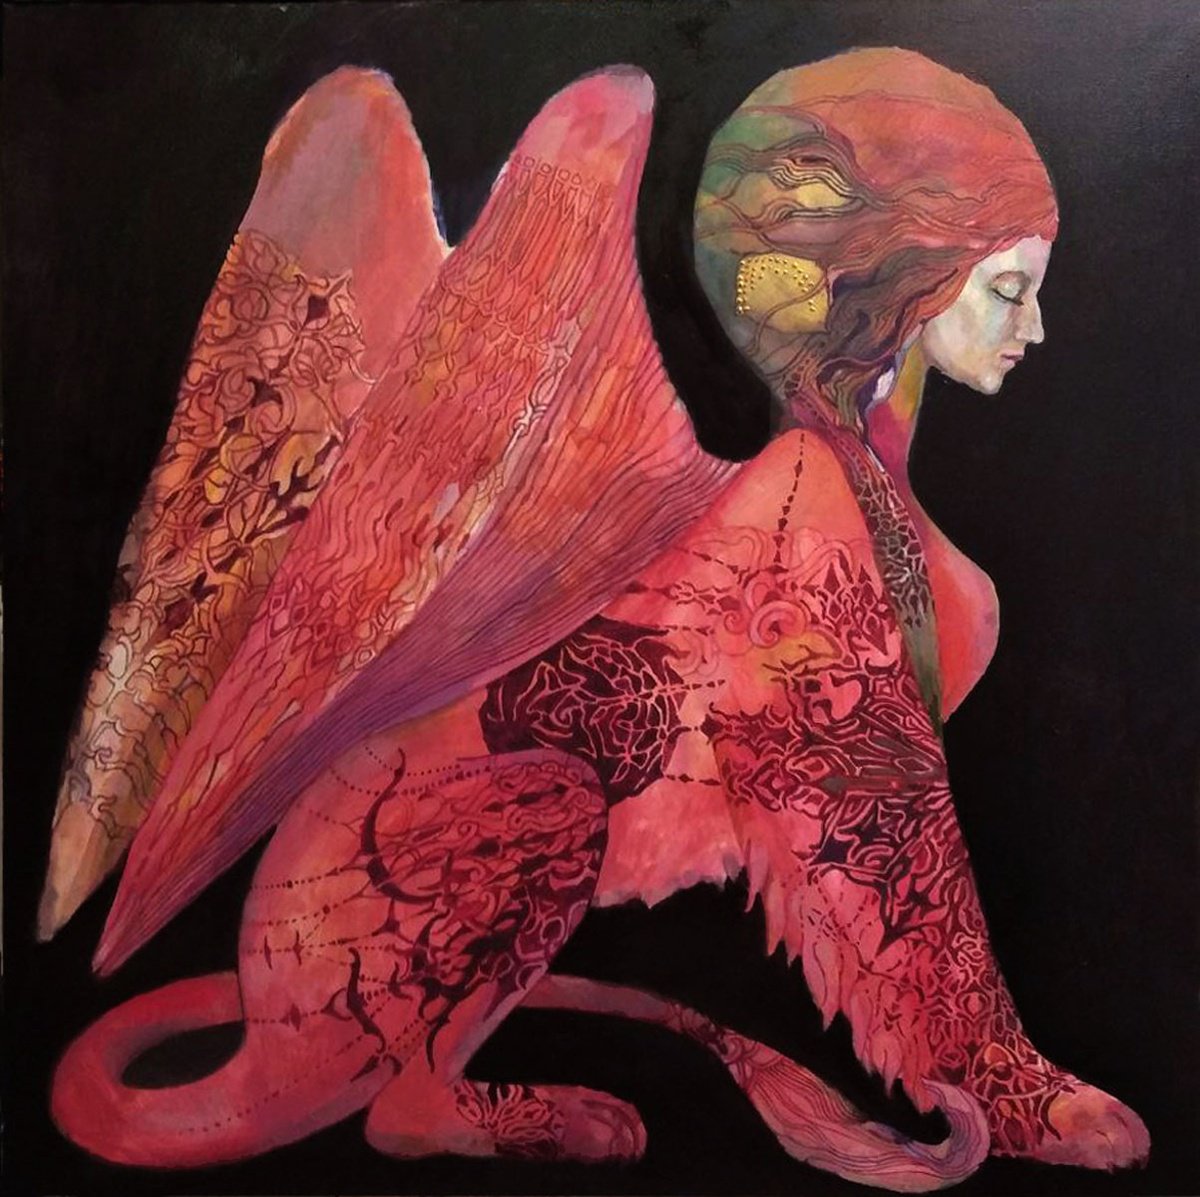 Fiery Wings by Olga Zelinska